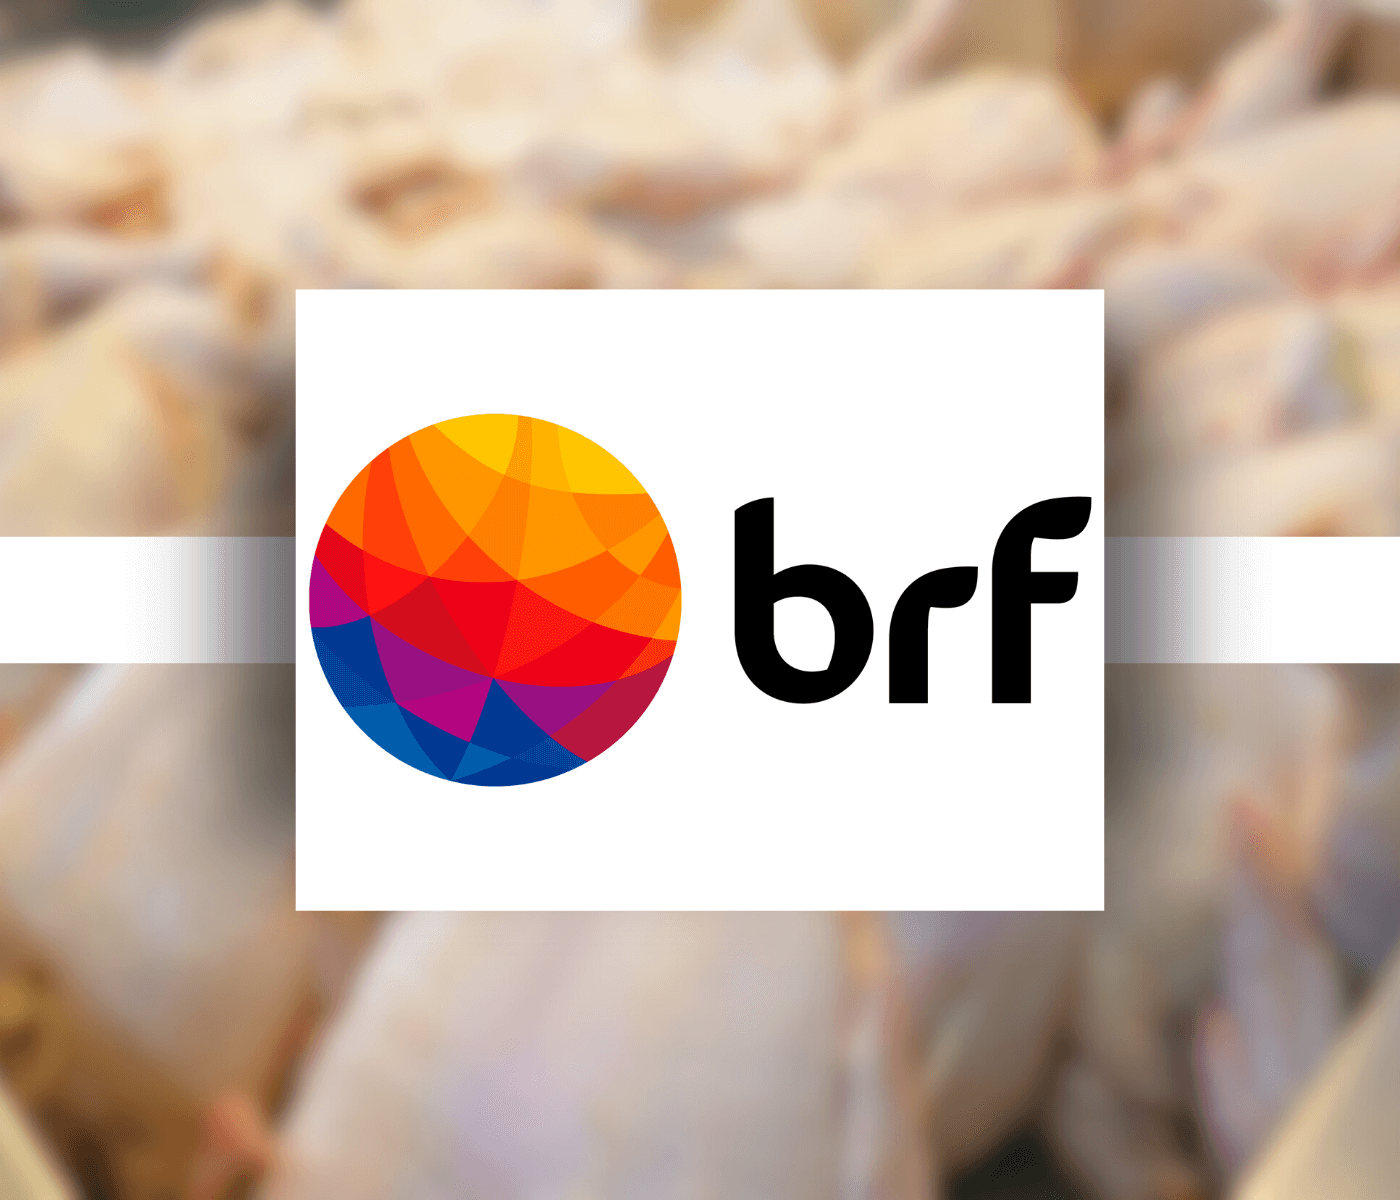 BRF certifica 100% de suas unidades de abate em bem-estar animal no Brasil 